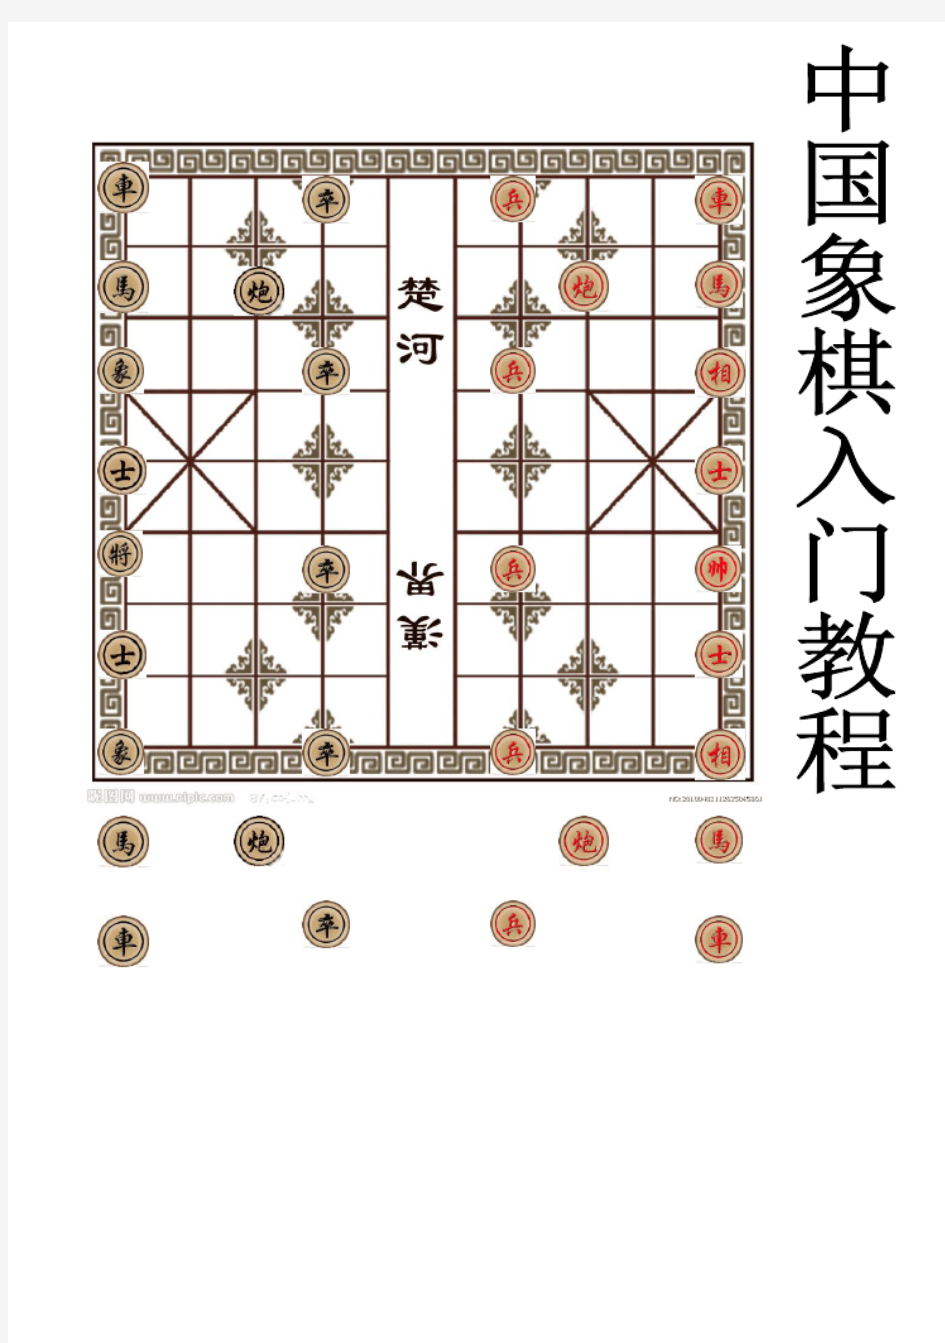 中国象棋入门教程1